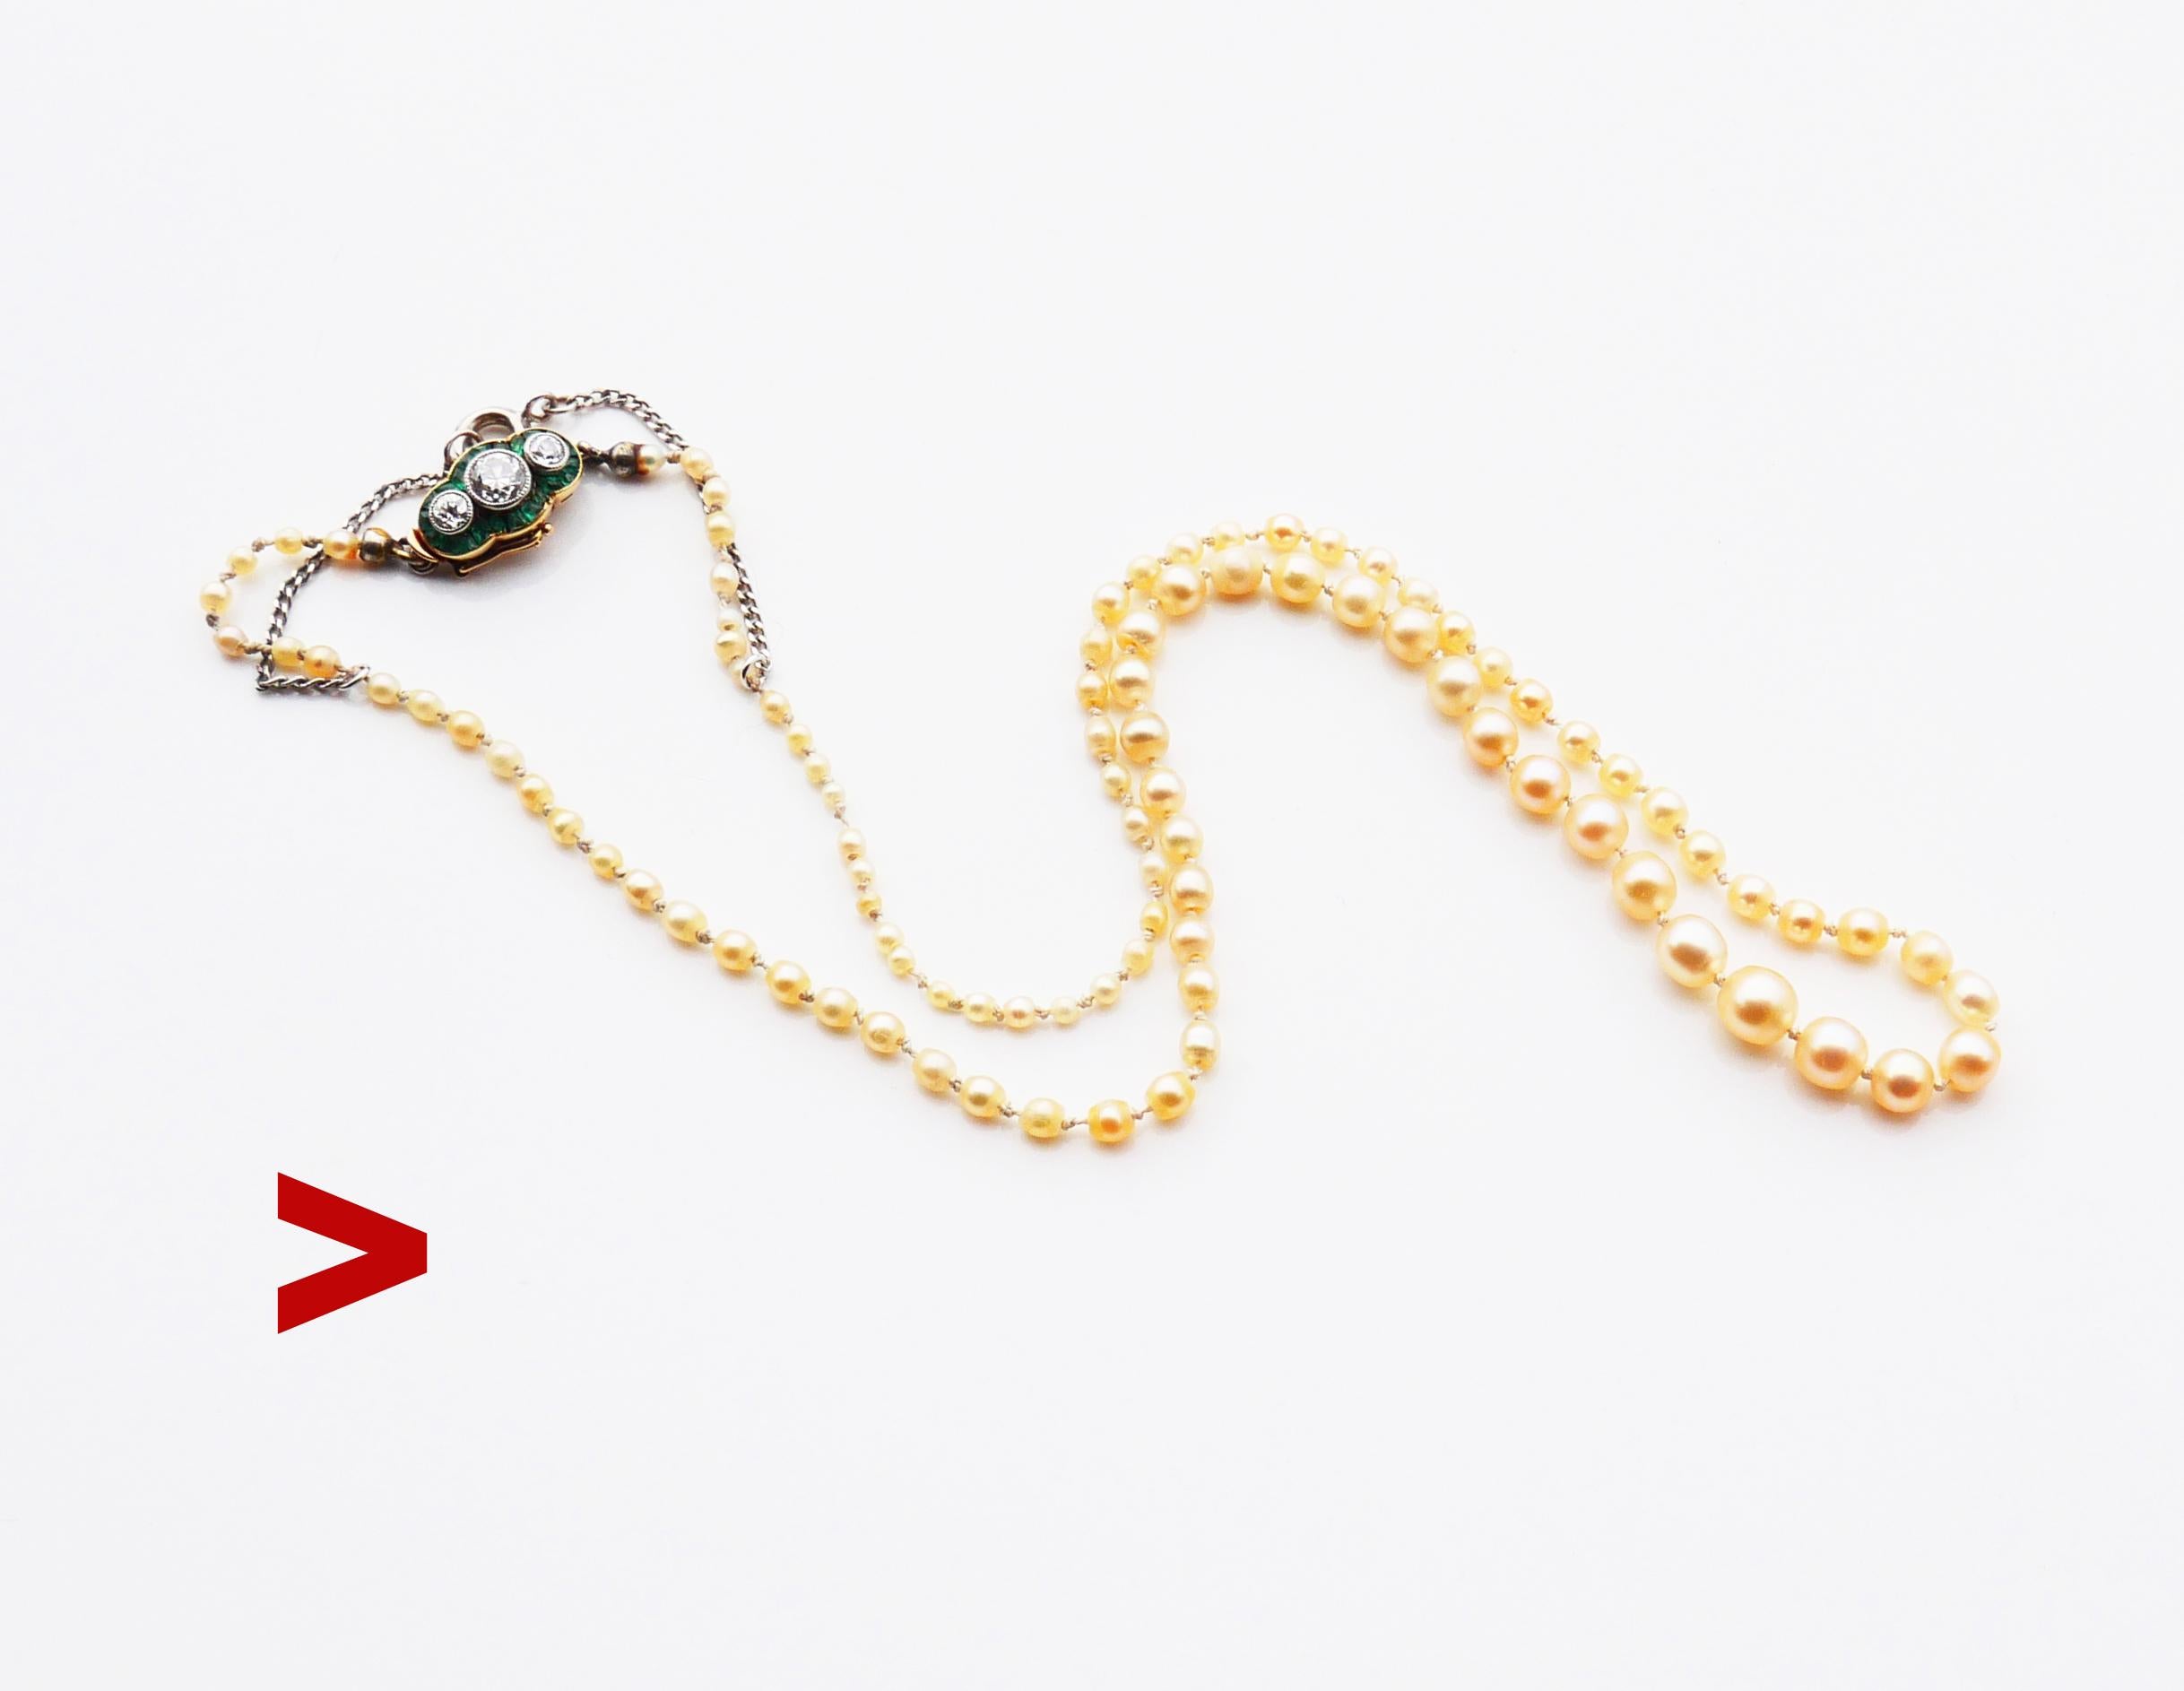 Fein ca. frühen XX Jahrhundert. Halskette mit 99 natürlichen Perlen in verschiedenen Größen, ergänzt durch einen originalen V-Verschluss mit Sicherheitsverschluss in massivem 18 Karat Orange- und Weißgold, verziert mit 3 Diamanten im alten